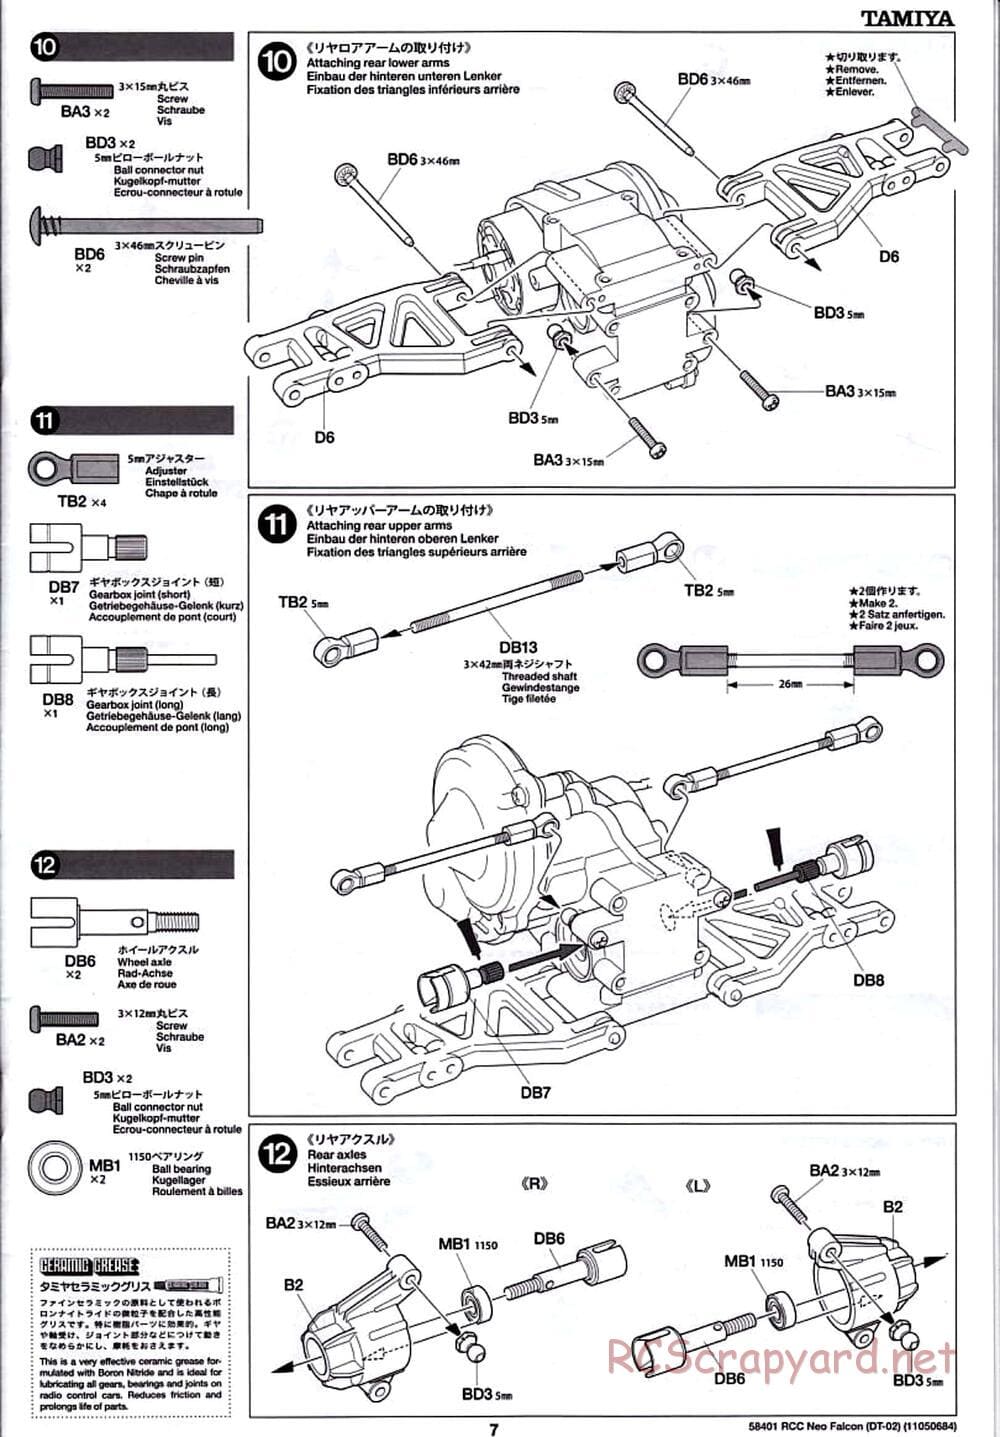 Tamiya - Neo Falcon Chassis - Manual - Page 7